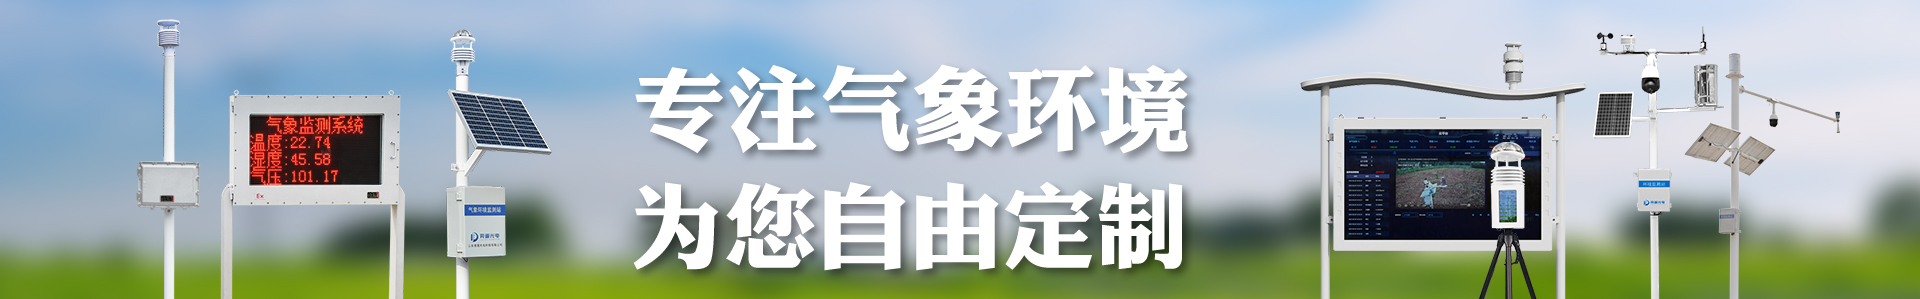 土壤墒情监测系统解决方案-自动气象站-小型气象站-防爆气象站-光伏气象站-南宫NG·28(中国)官方网站